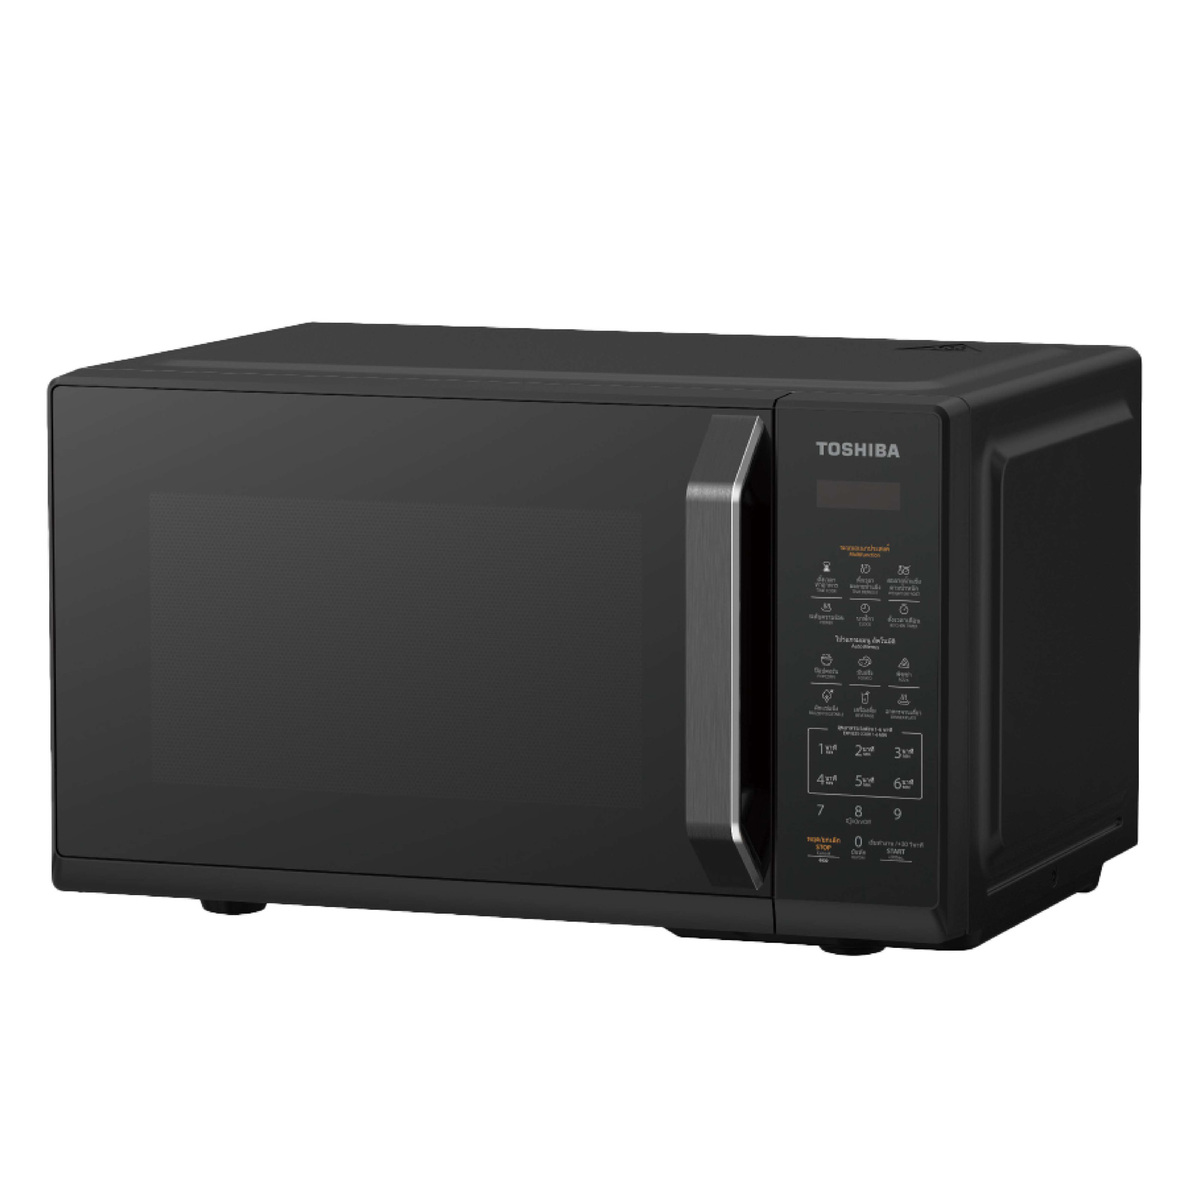 Toshiba Microwave Oven, 20 L, Black, MW3-EM20PE